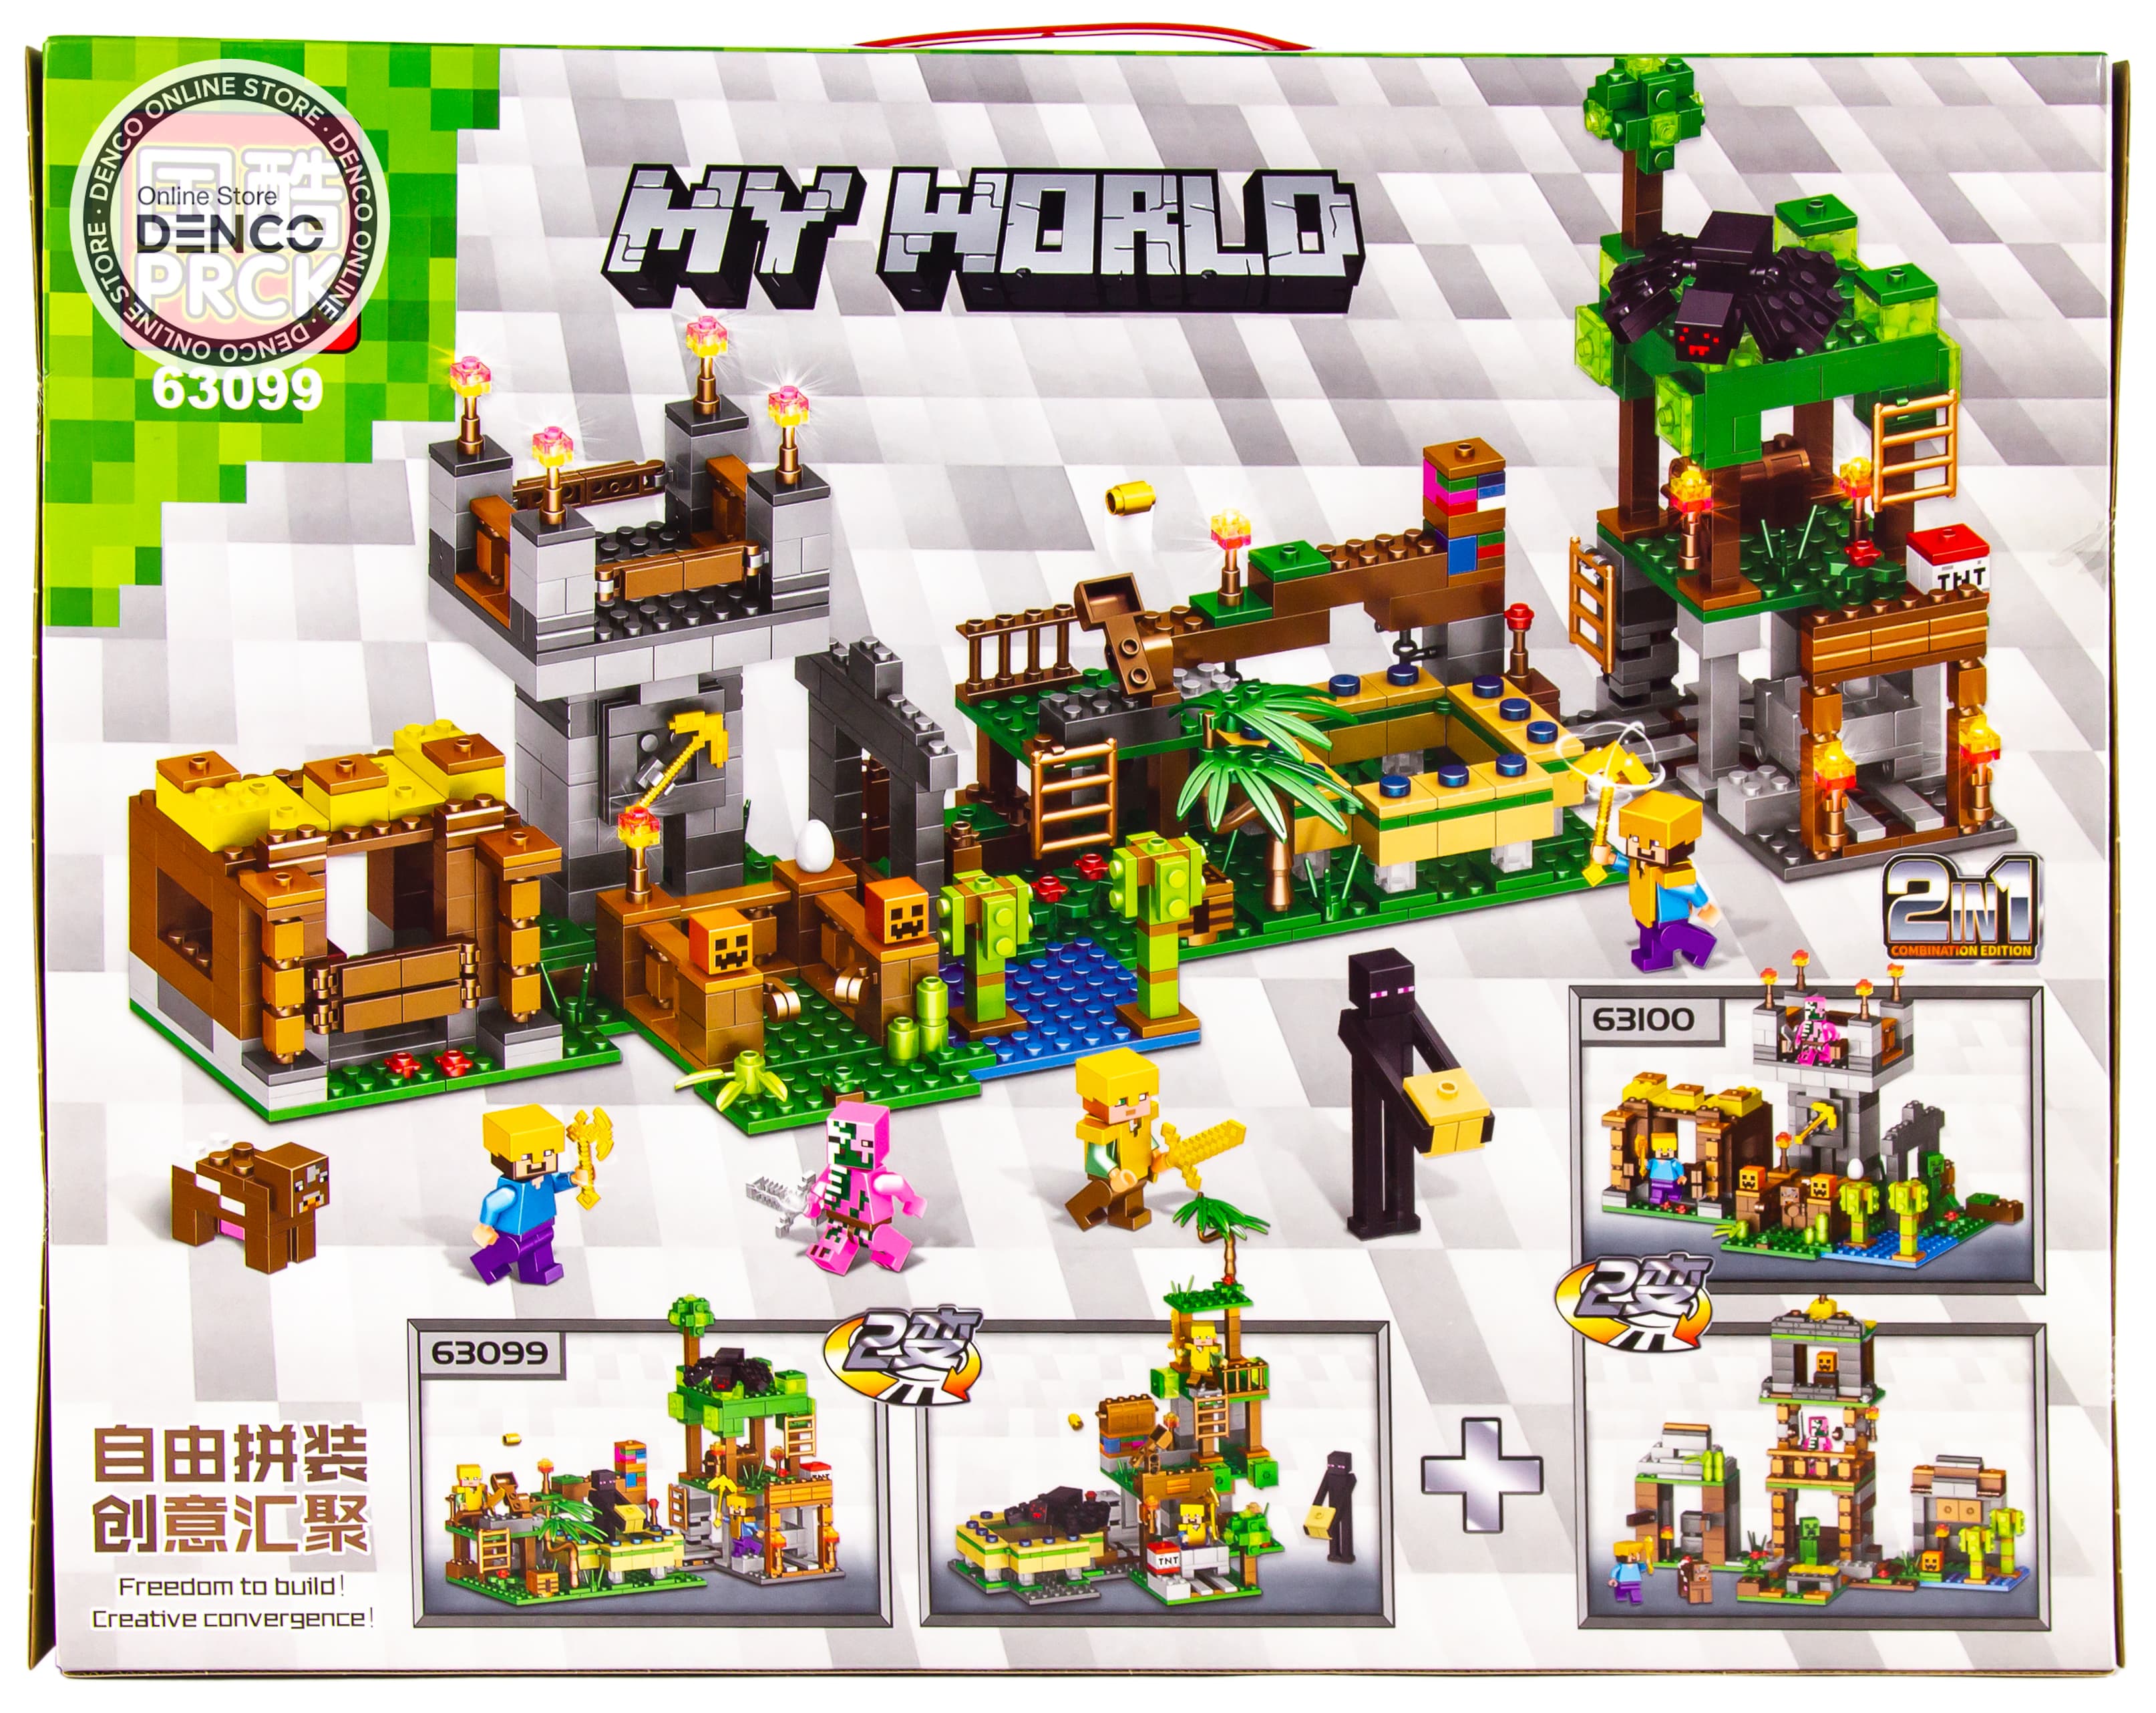 Конструктор PRCK My World «Большая компания» 63099 (Minecraft) / 440 деталей